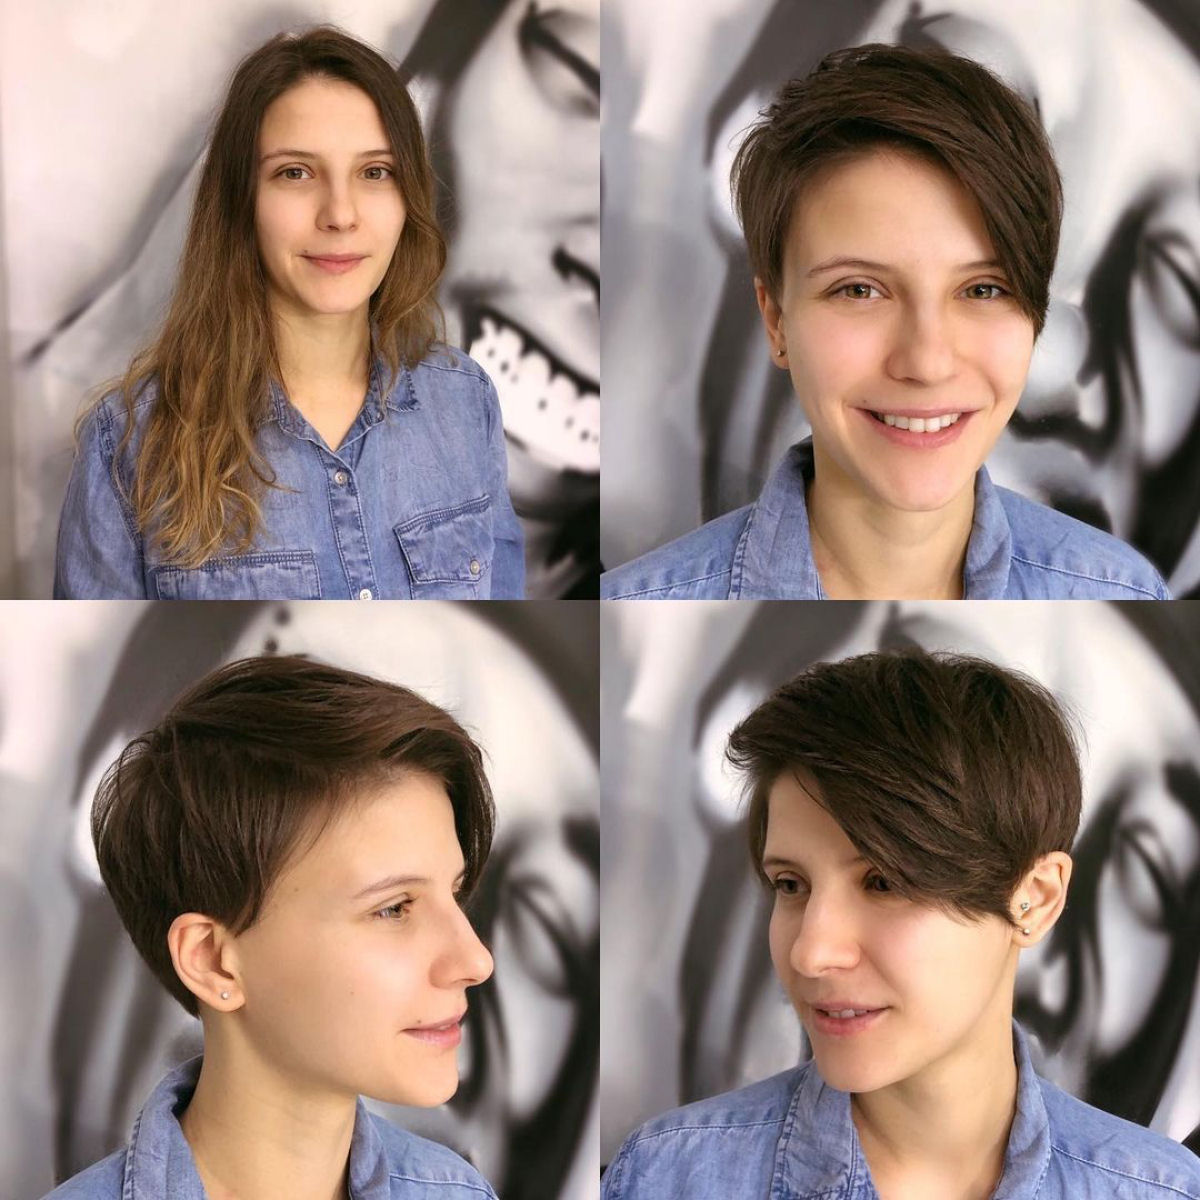 Cabeleireira moscovita demonstra que a beleza não se mede pelo comprimento do cabelo 07